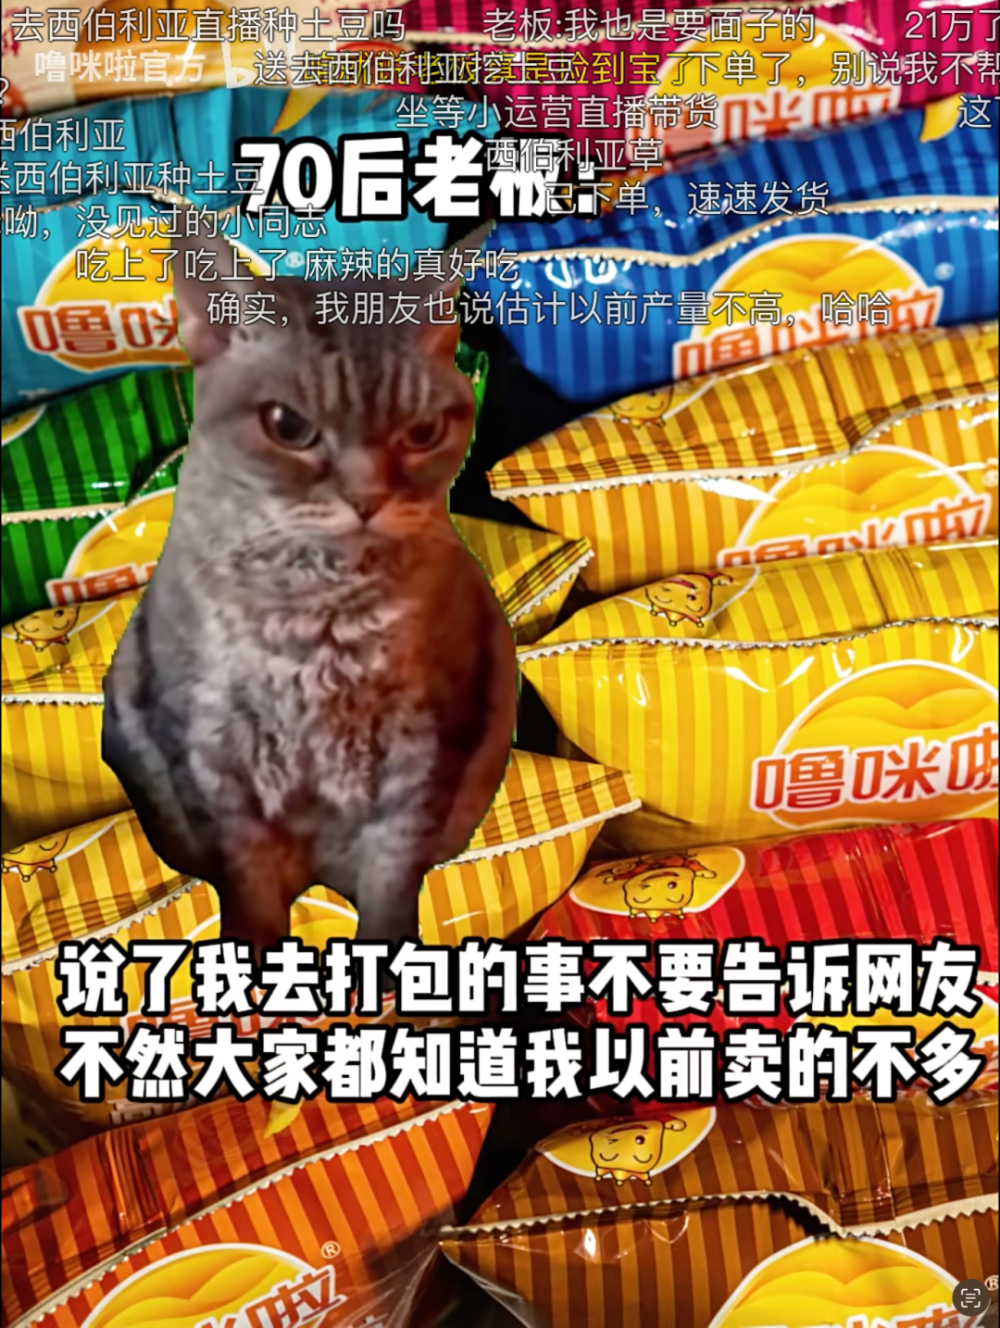 刷屏的猫meme营销:中小企业的挣扎与抵抗